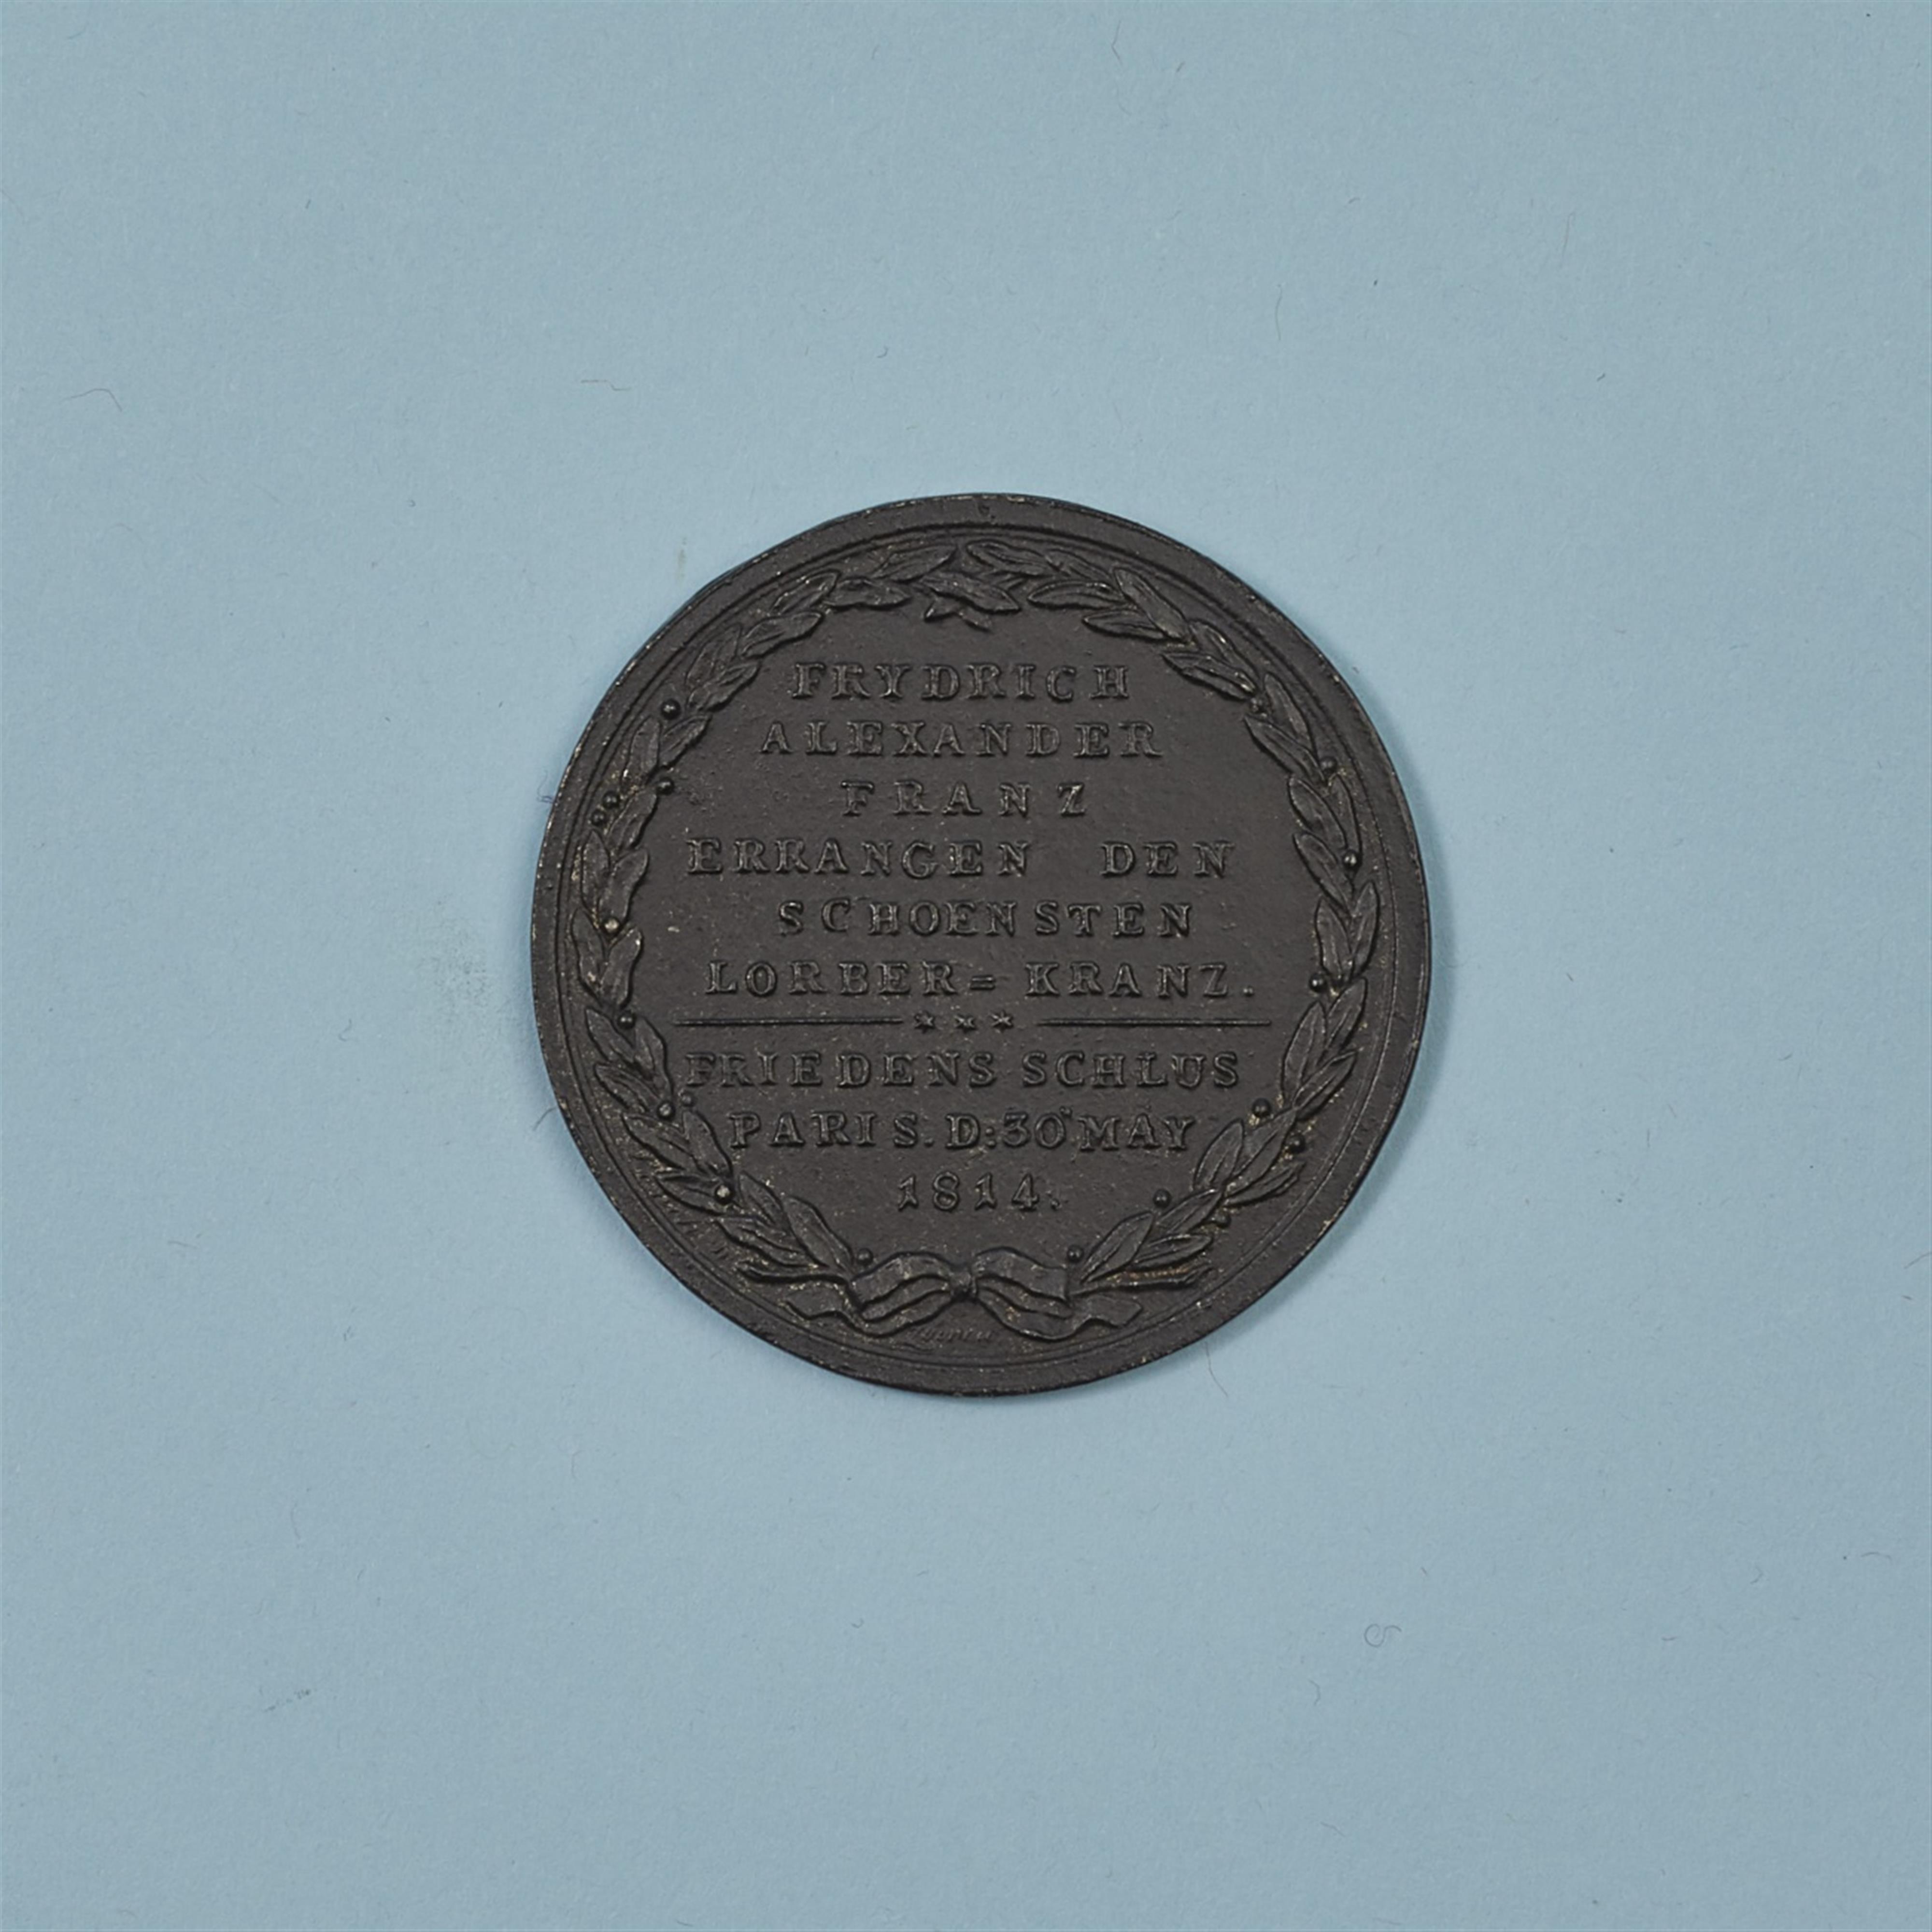 Medaille "Frydrich, Alexander, Franz errangen den schoensten Lorber-Kranz" - image-1